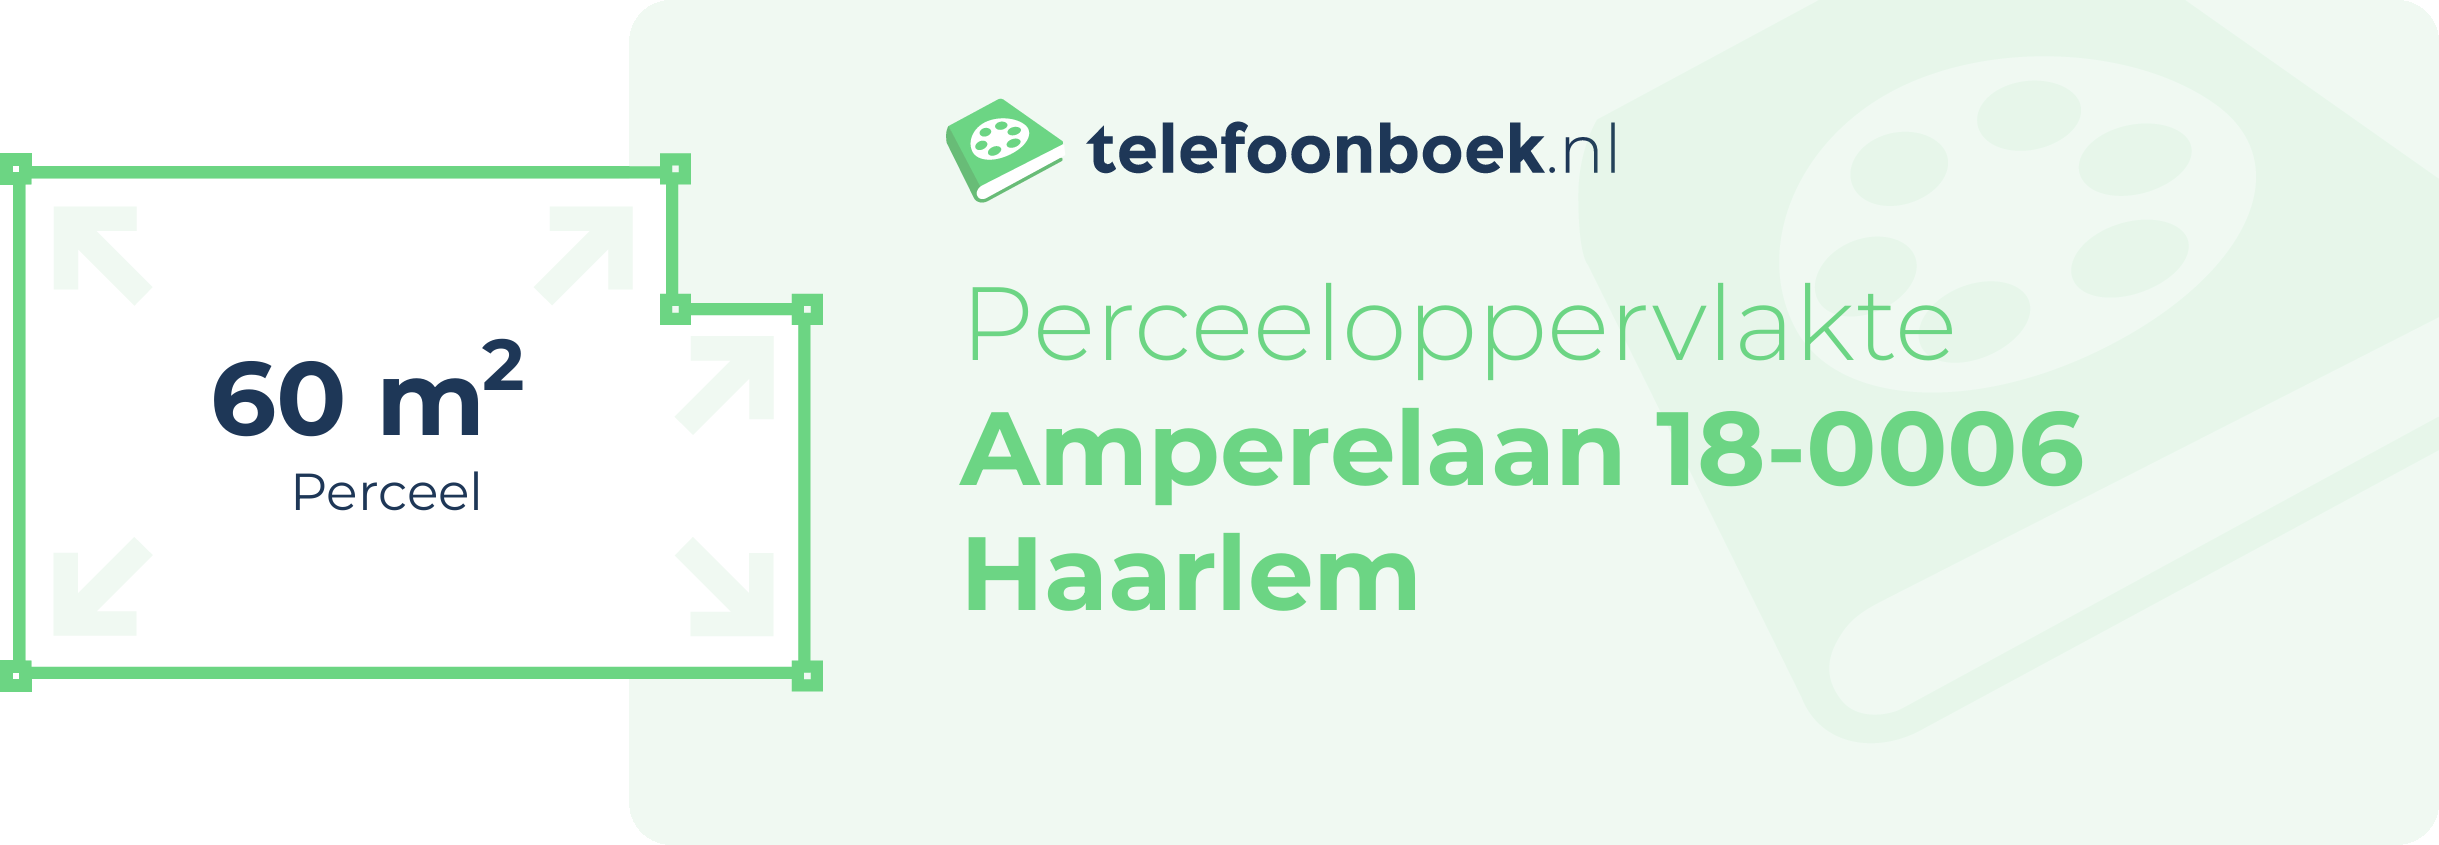 Perceeloppervlakte Amperelaan 18-0006 Haarlem